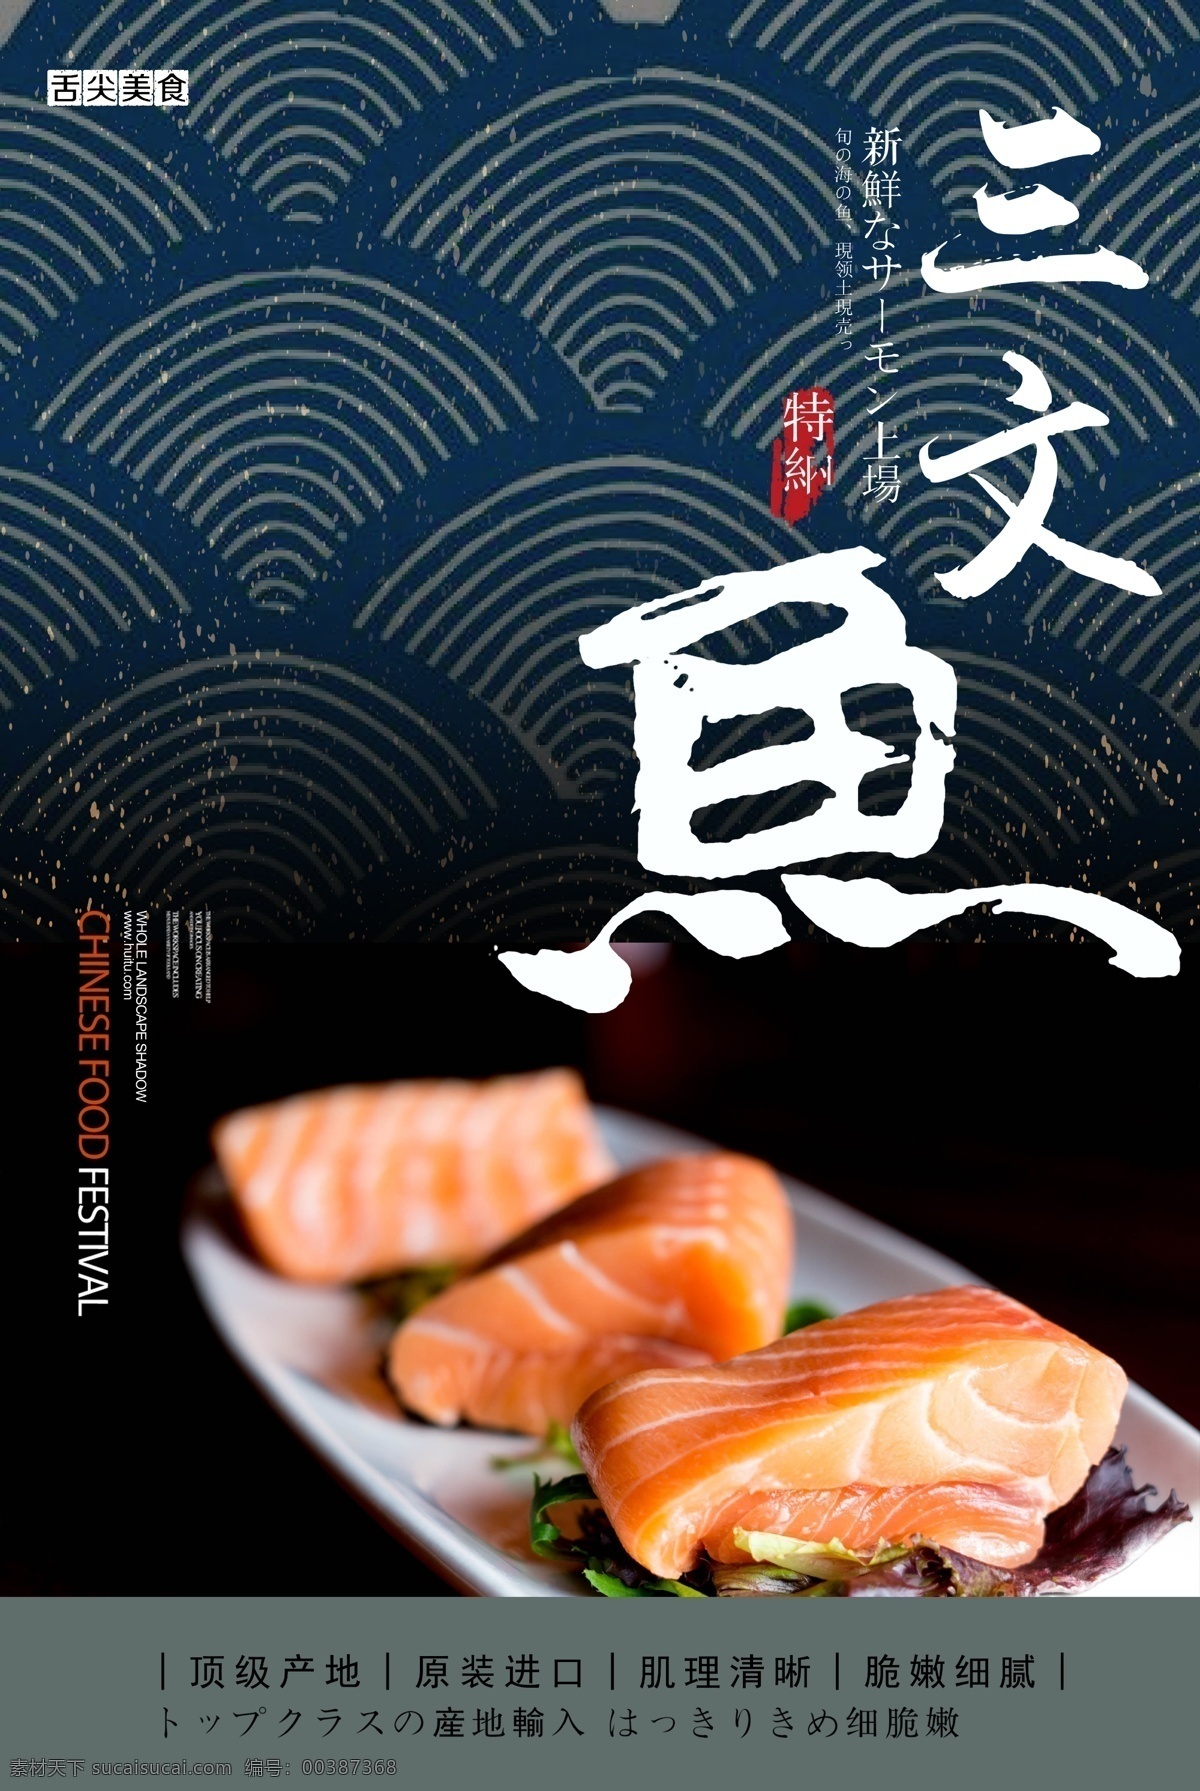 三文鱼 产品 宣传海报 食物 海鲜宣传 海鲜美食 广告海报 三文鱼海报